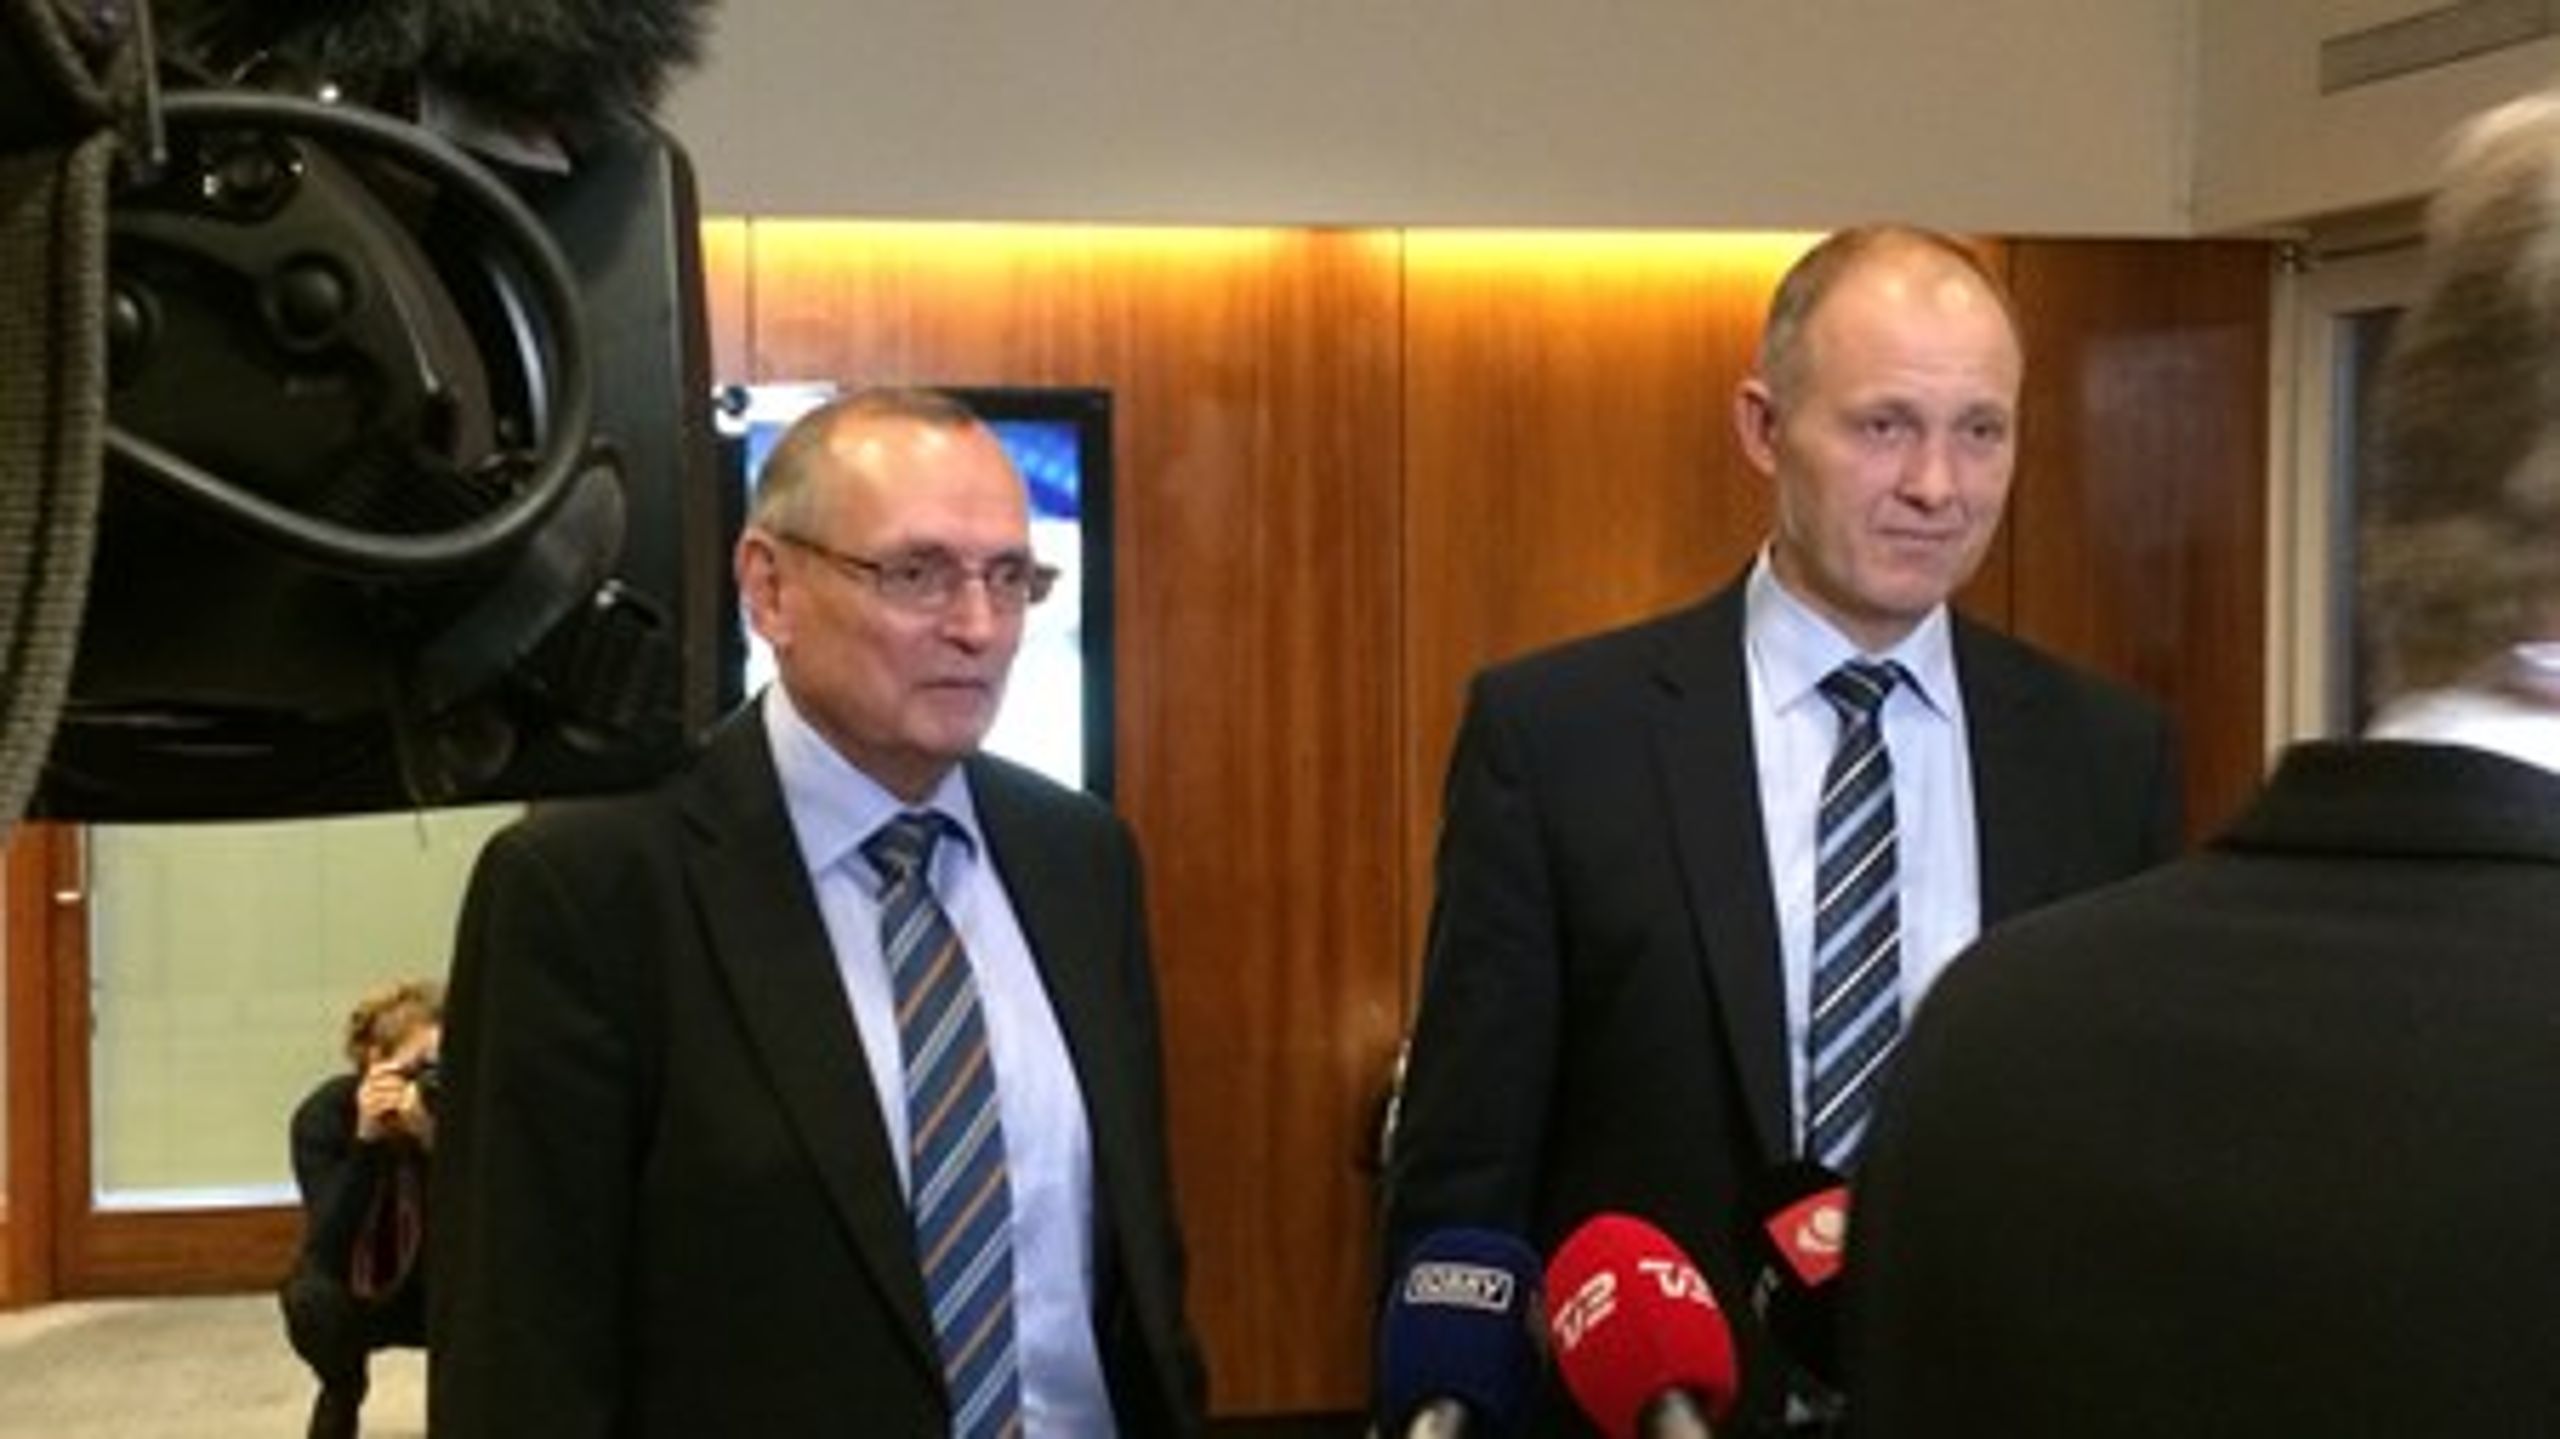 Danske Regioners formand,&nbsp;Bent Hansen, og KL's formand, Martin Damm, da de præsenterede planerne om en fusion i november 2014.&nbsp;